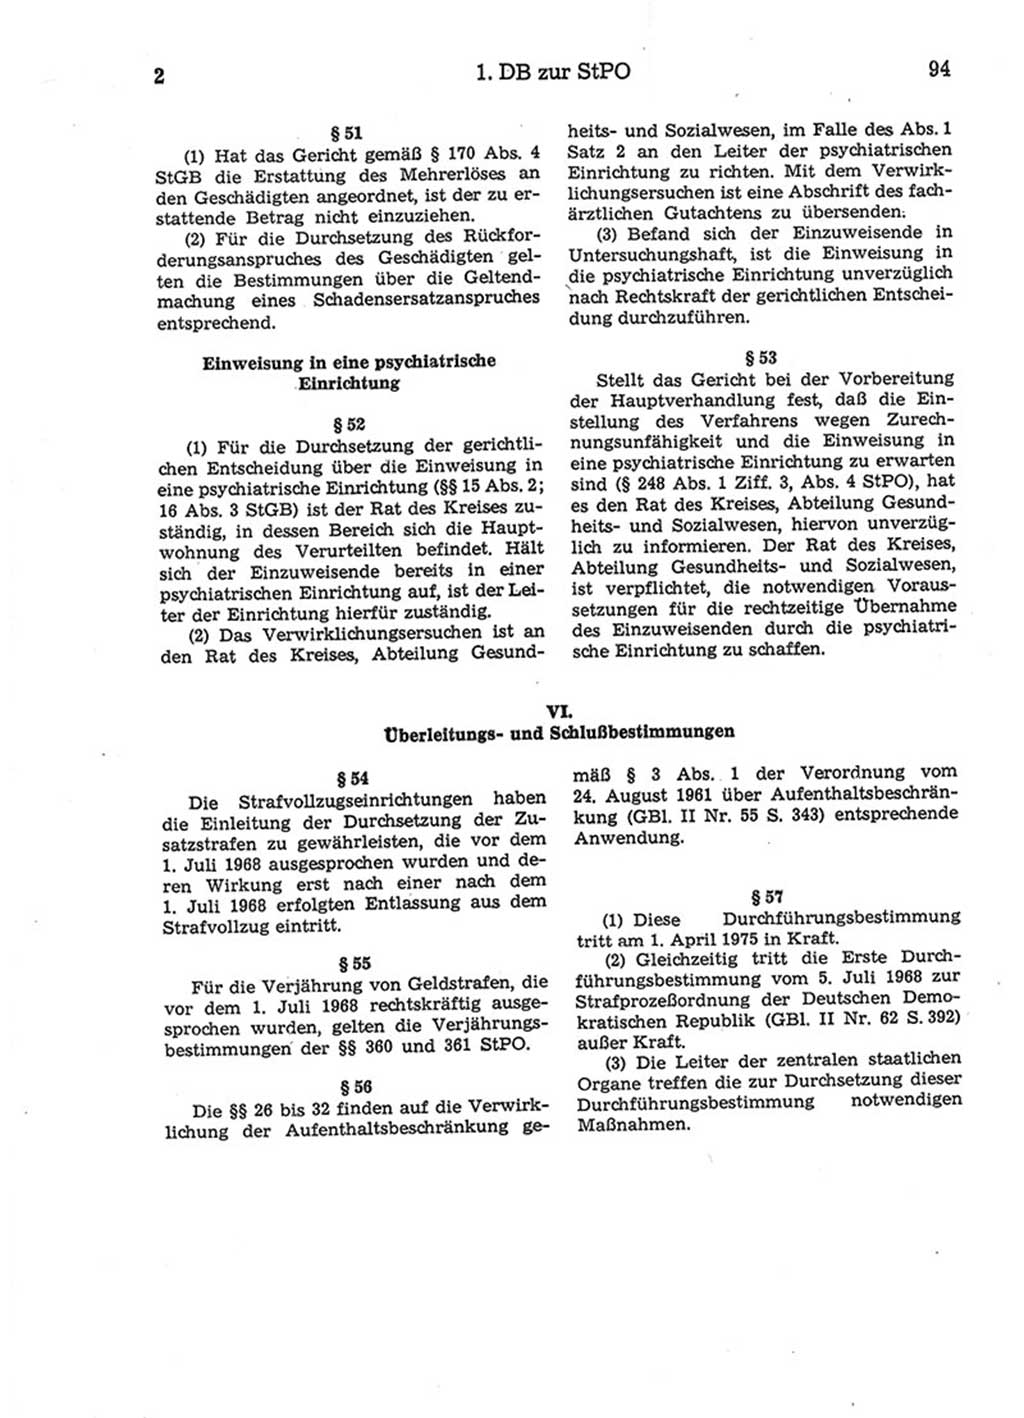 Strafprozeßordnung (StPO) der Deutschen Demokratischen Republik (DDR) 1975, Seite 94 (StPO DDR 1974, S. 94)